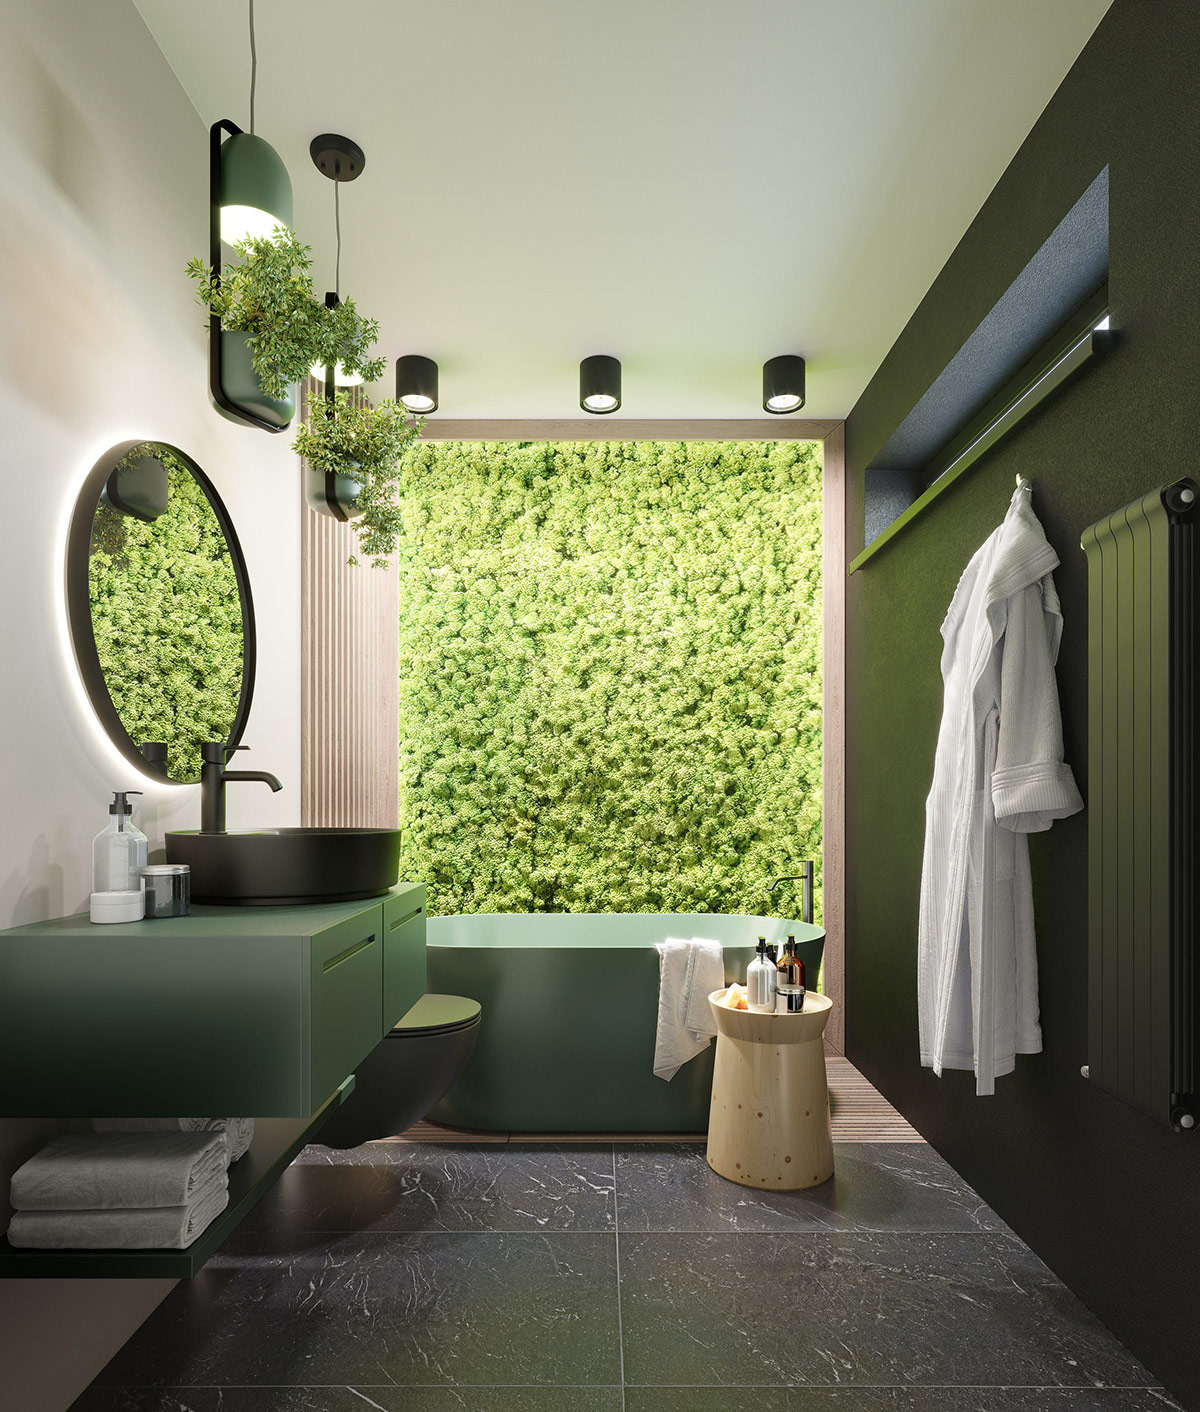 Một bồn tắm màu xanh lá cây và vườn thẳng đứng độc đáo, gây ấn tượng thị giác mạnh mẽ ngay từ cái nhìn đầu tiên.